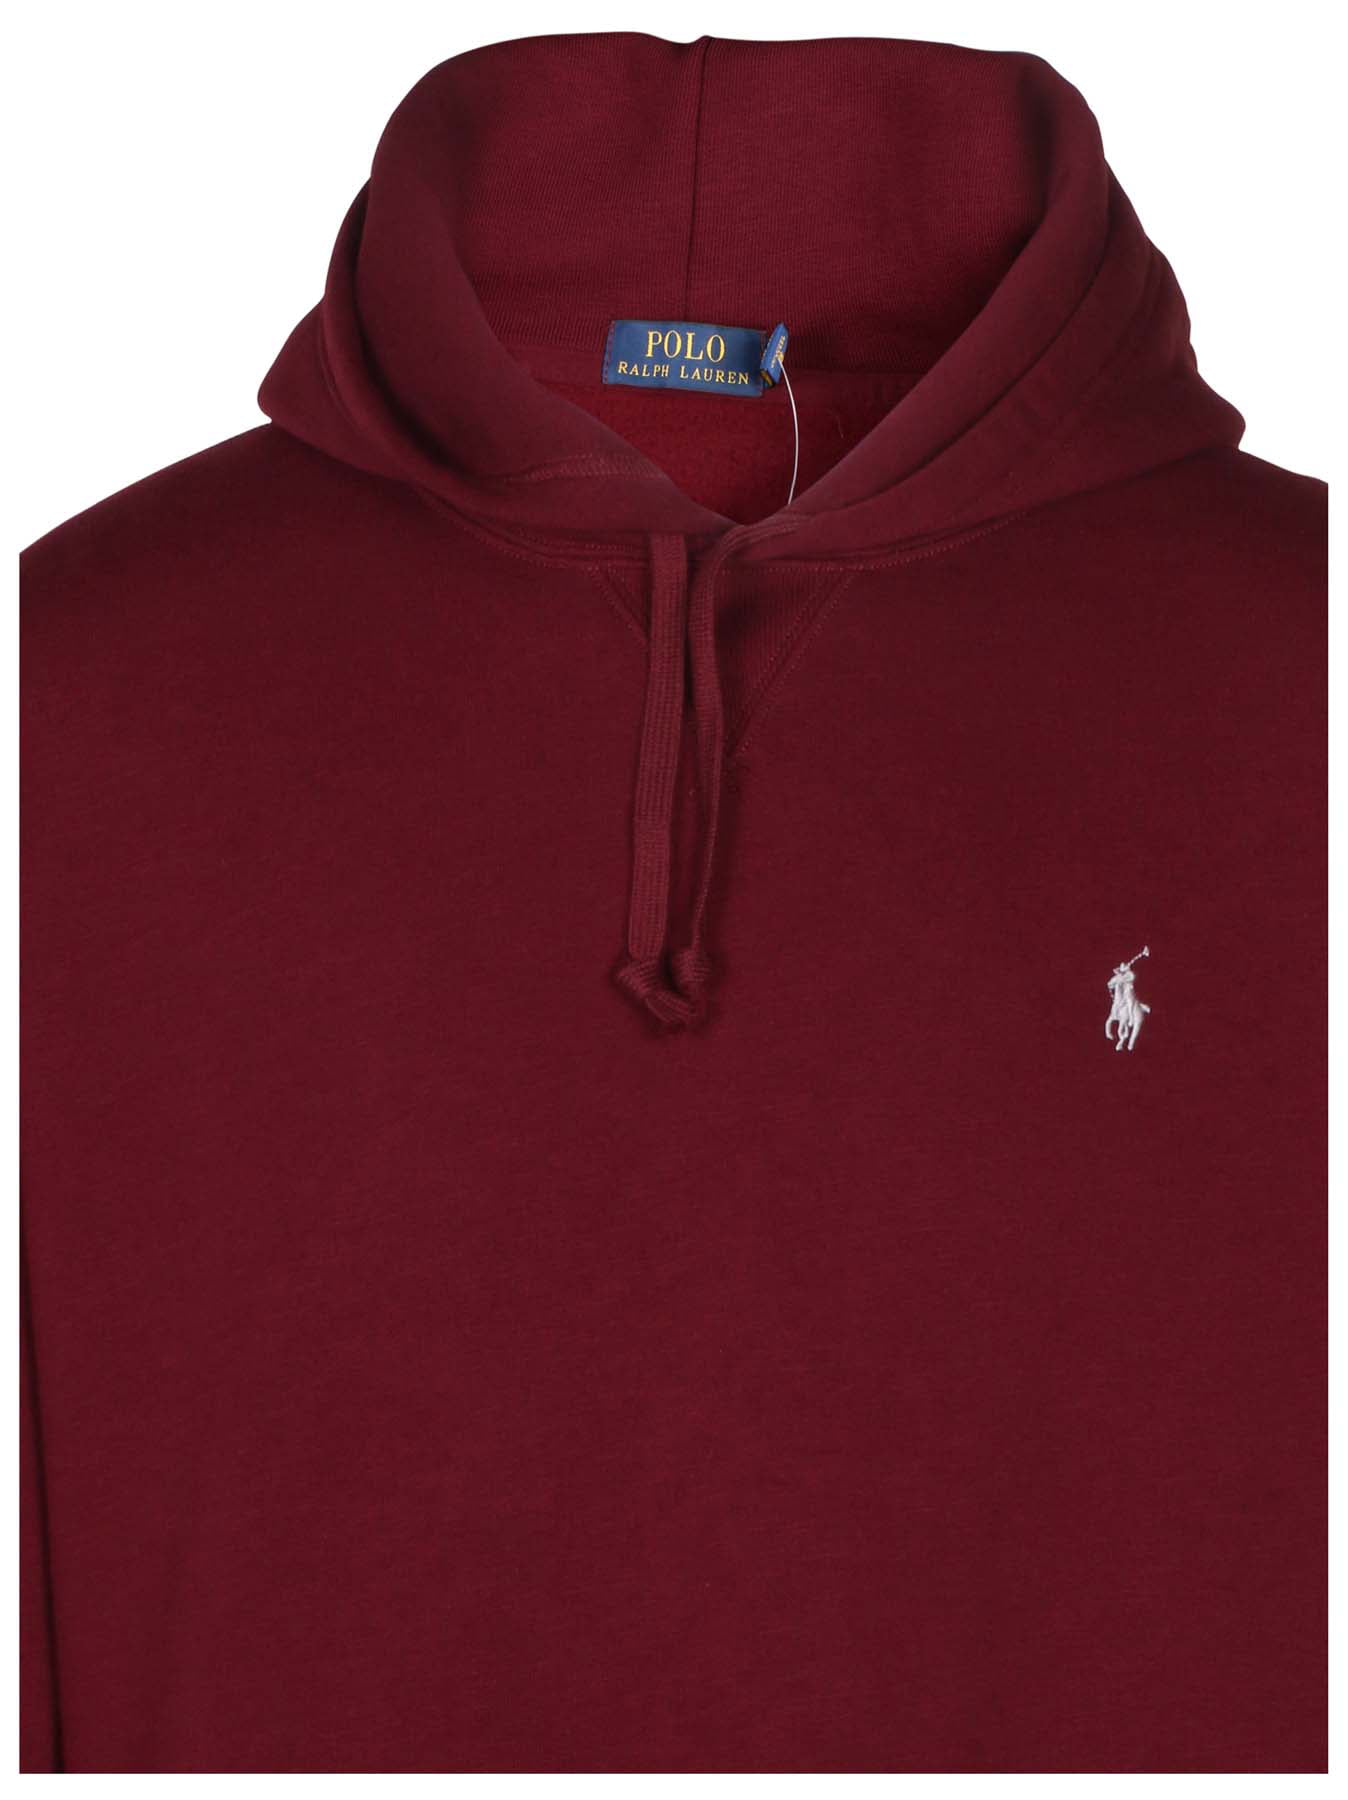 ralph lauren pullover hoodies